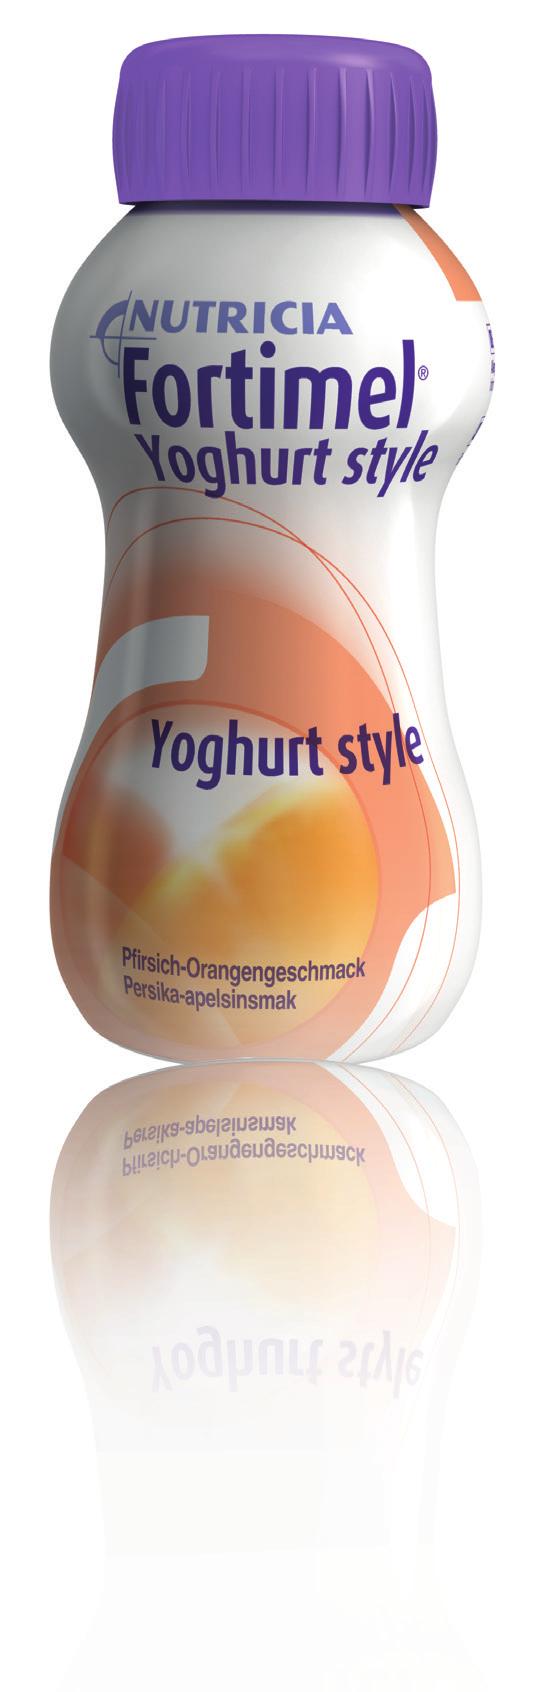 Fortimel Yoghurt Style Näringsmässigt komplett och energirik näringsdryck